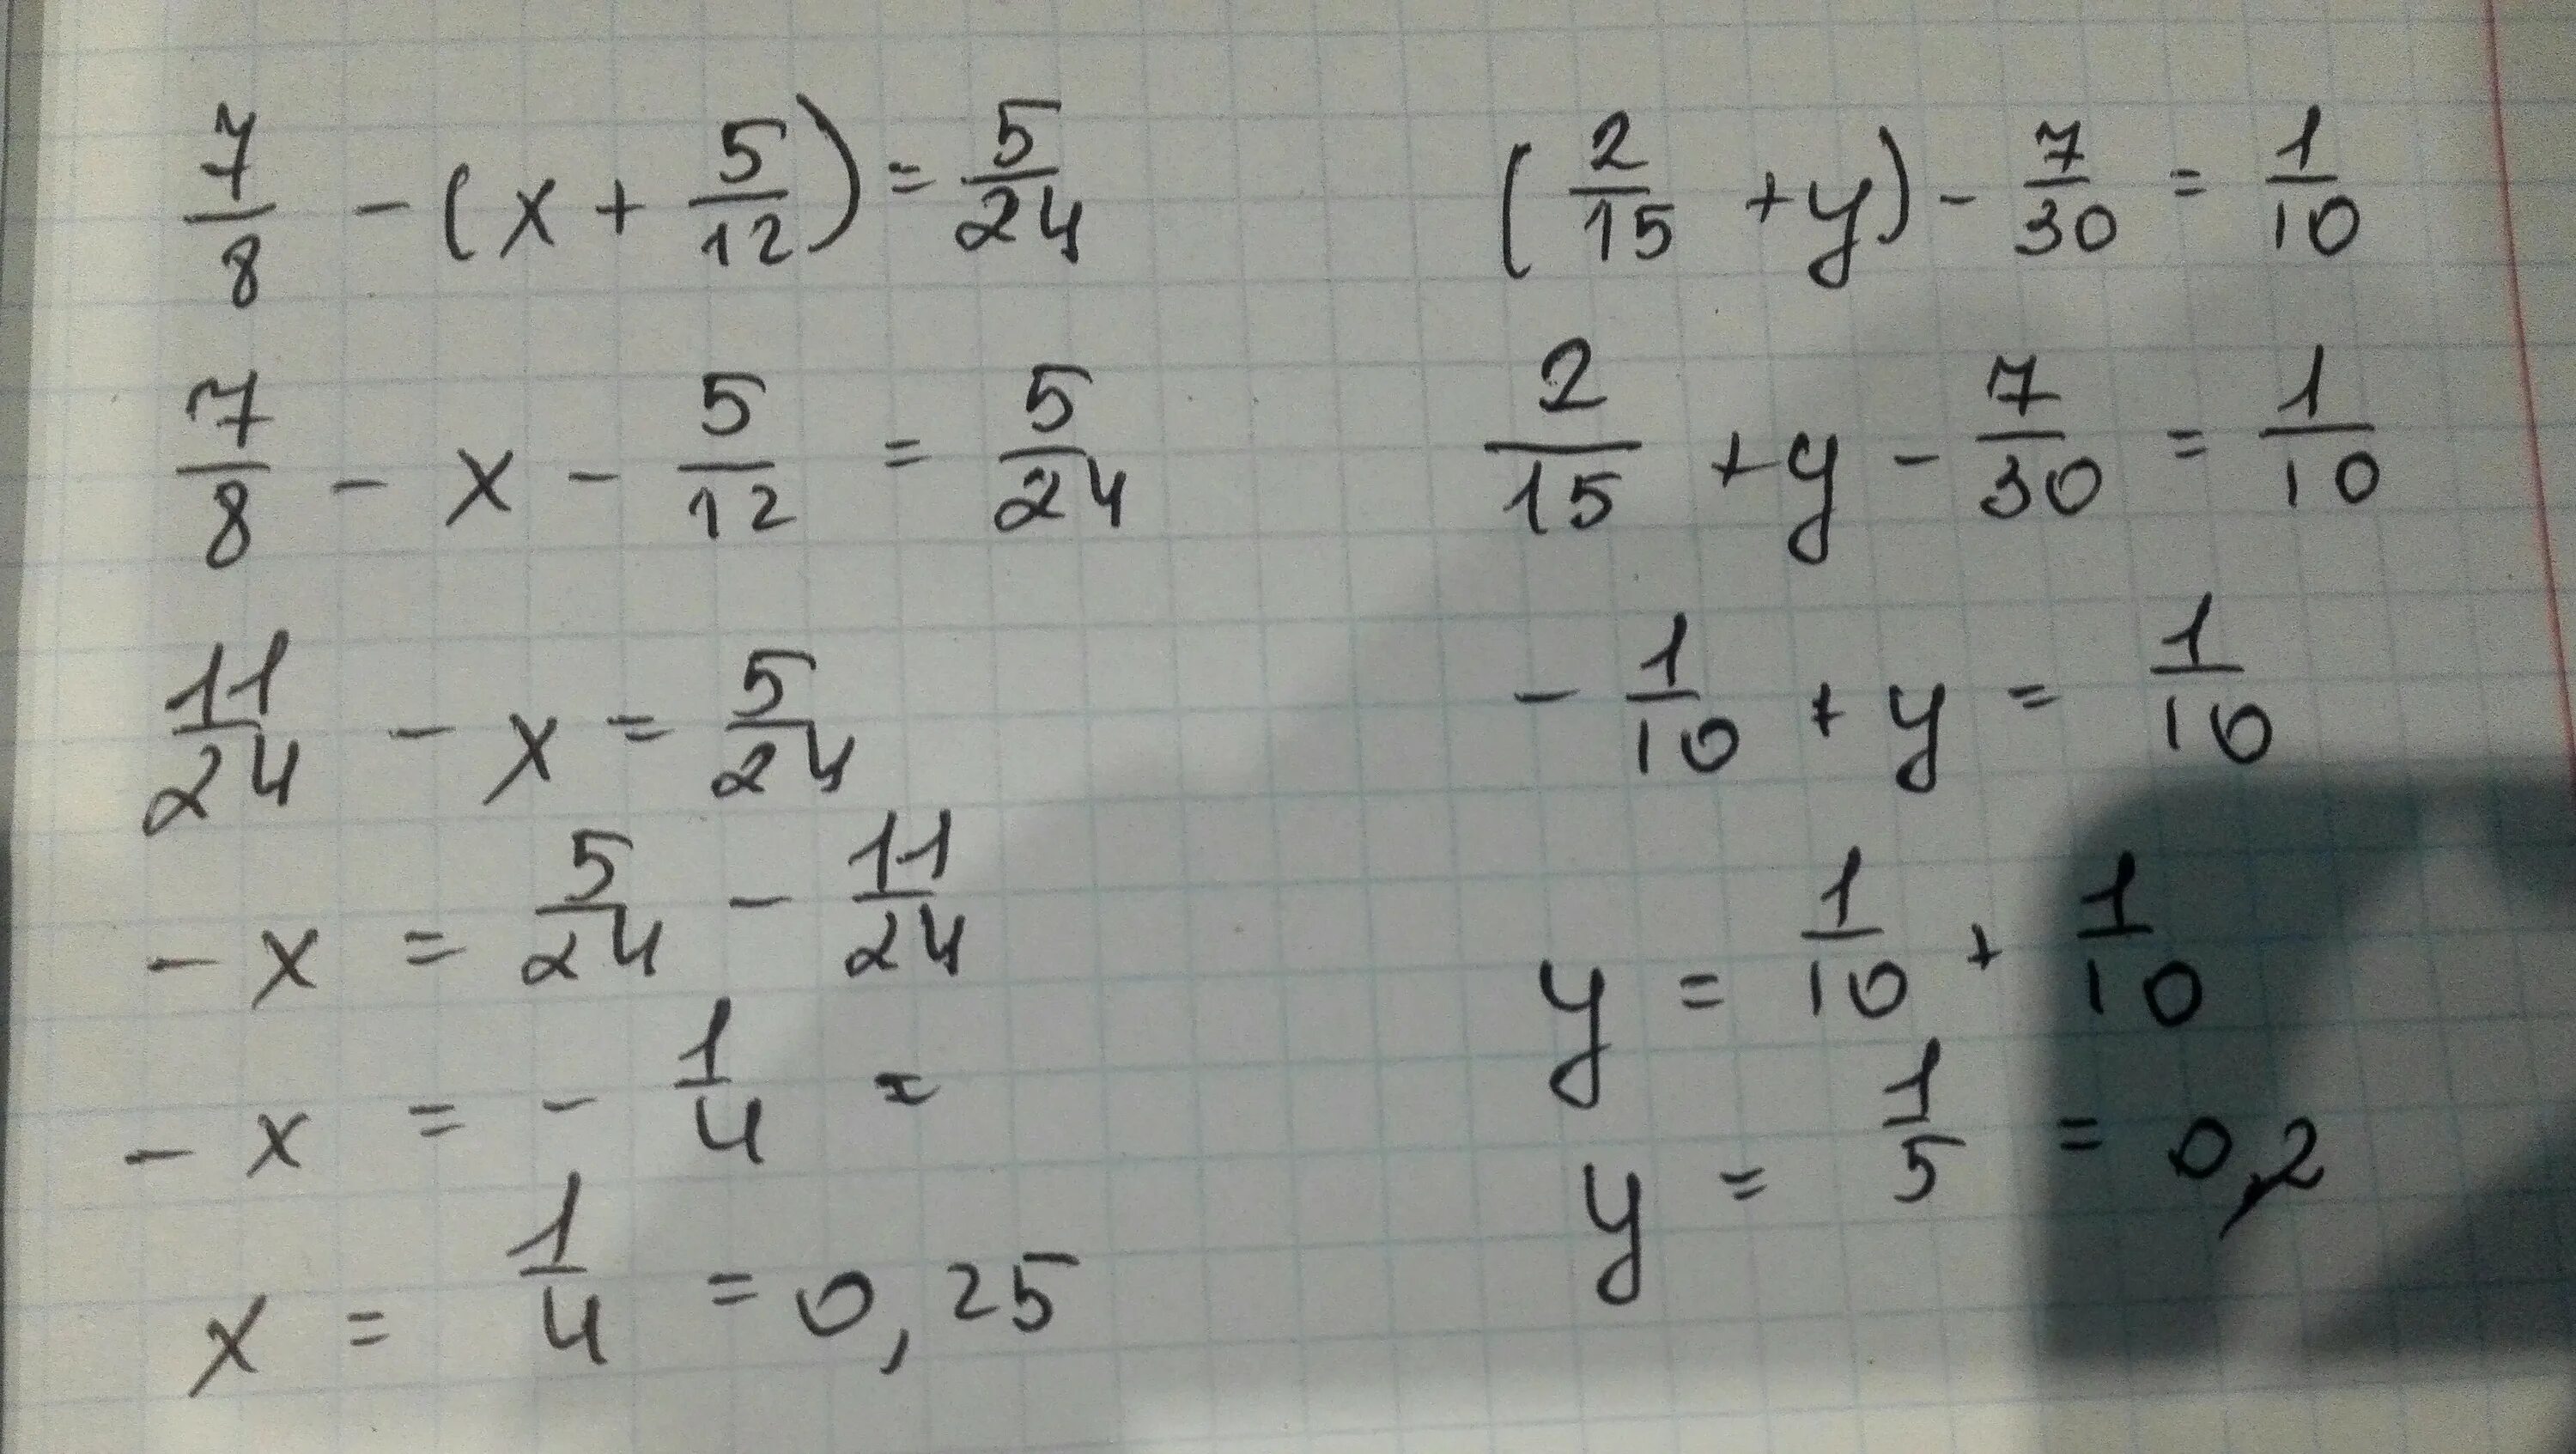 ( 2/15+1 7/12) ×30/103-2 2 1/4 ×9/32+2 1/3 решение. (2/15+1 7/12)*30/103-2:2 1/4*9/32+2 1/3. ( 15 2 + 1 12 7 ) ⋅ 103 30 − 2 : 2 4 1 ⋅ 32 9 + 2 4 3. 10) -30-(12-2x)=8-2x. Б 2 y 1 15 10